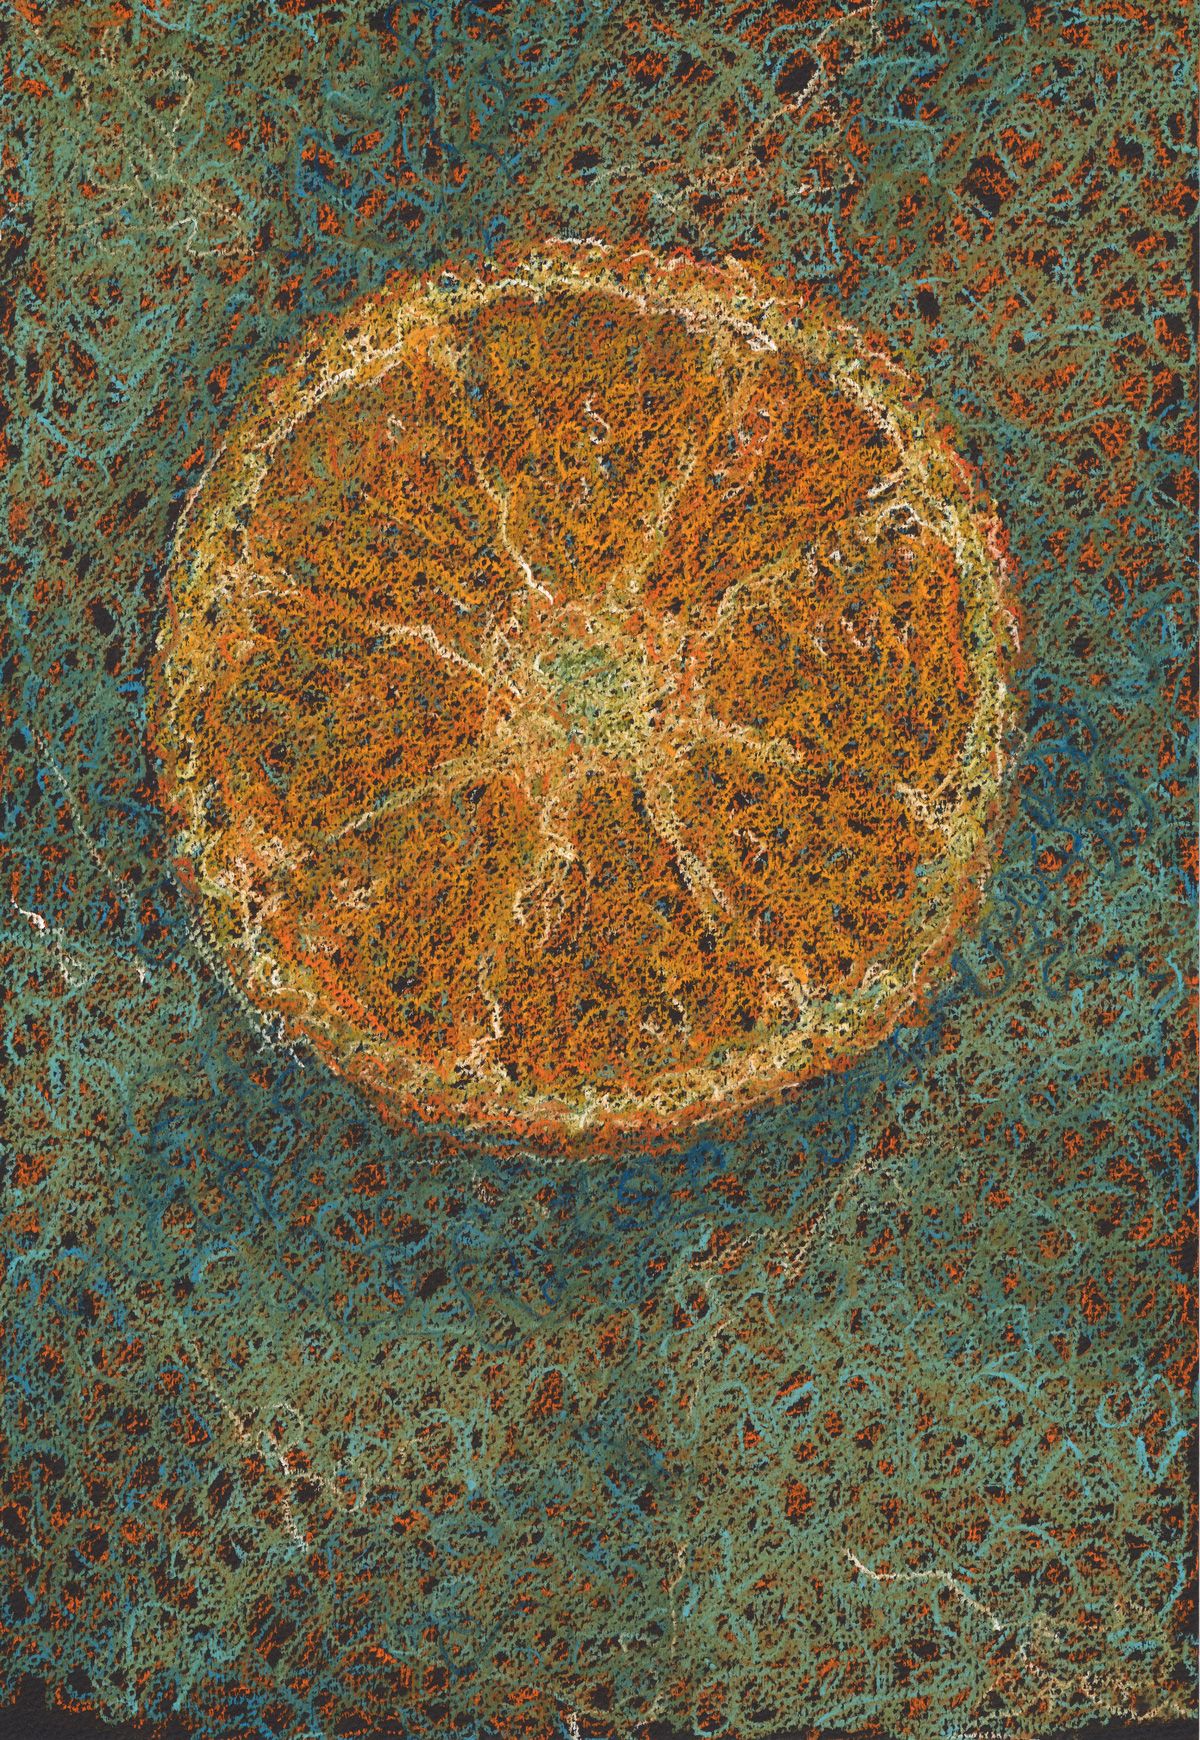 Jake Wresinski, “Slice” - 2017, Pastel on Paper, 19 x 13 in.